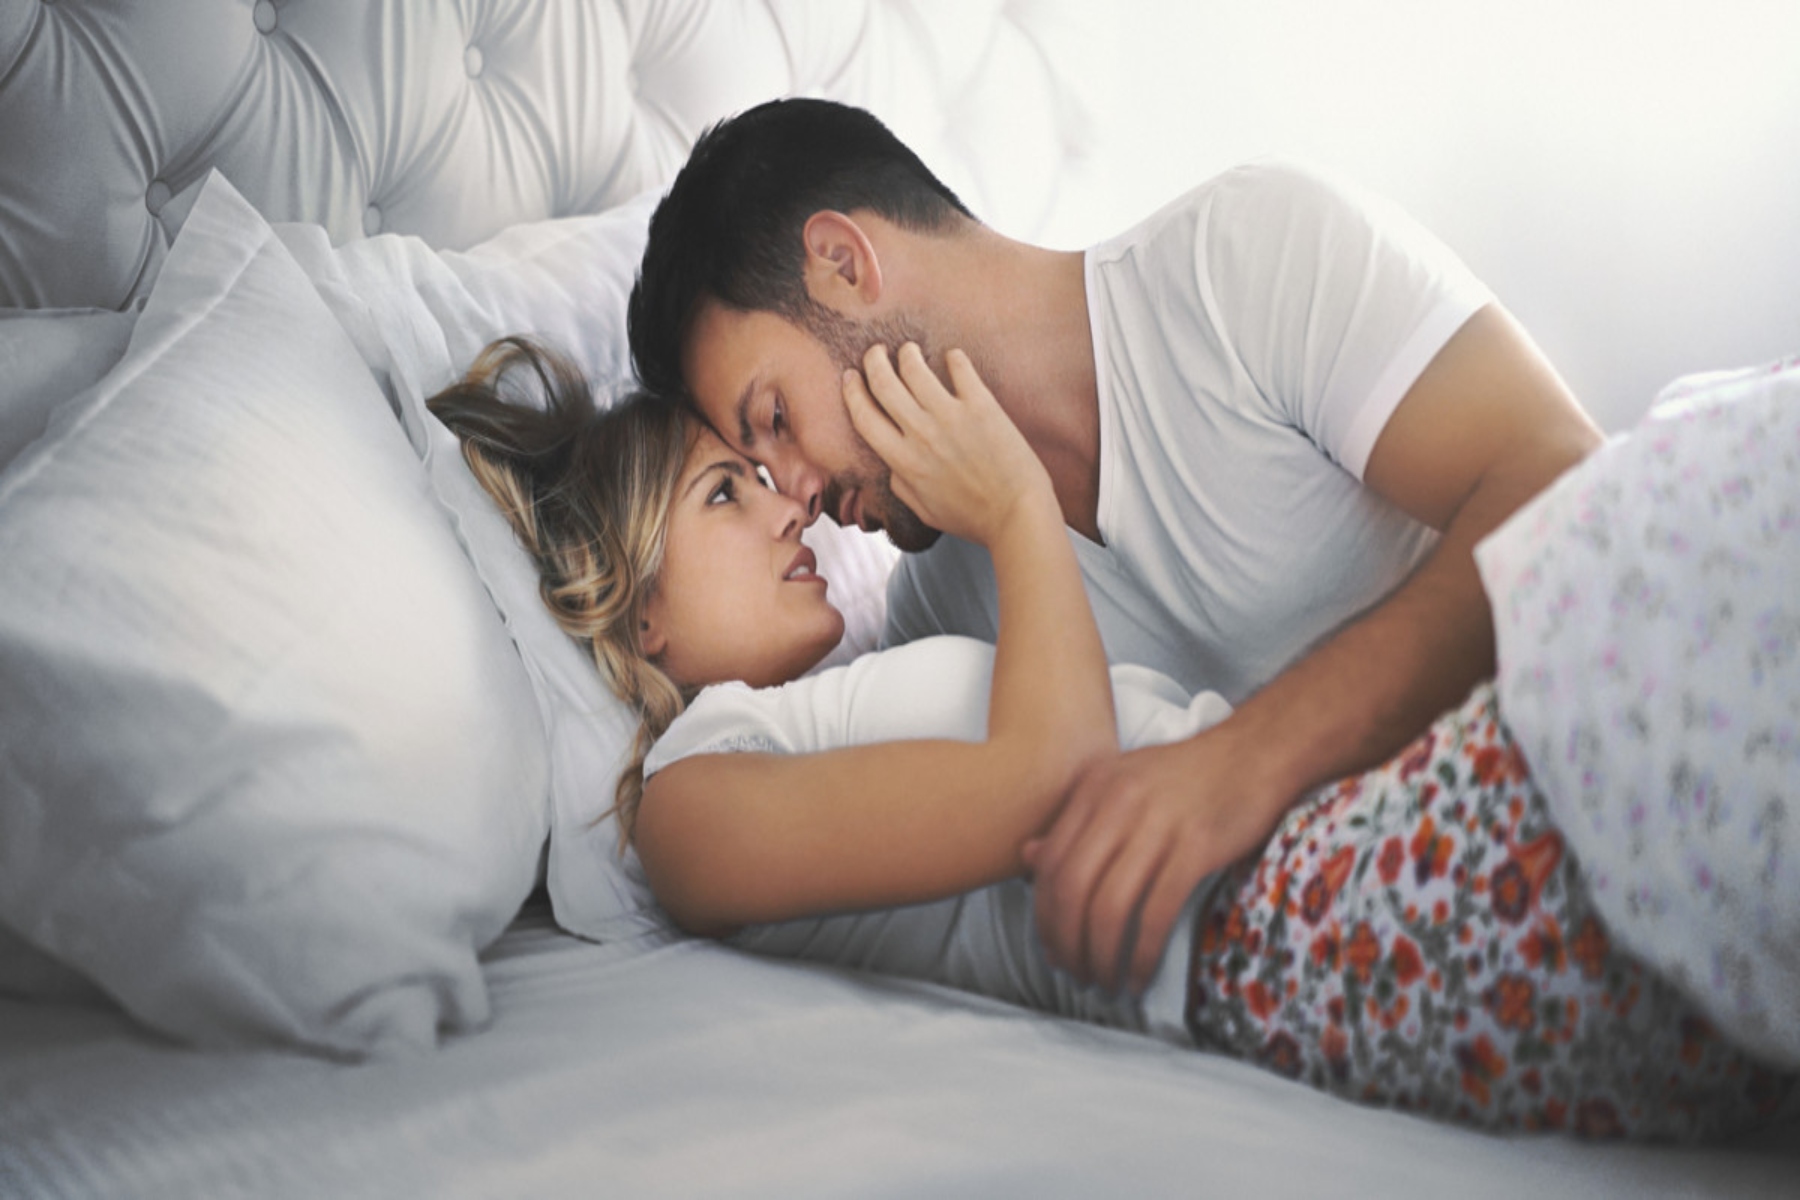 Ταντρικό σεξ: Χαλαρώστε ρυθμούς και απολαύστε μια νέα σεξουαλική σύνδεση με τον σύντροφό σας